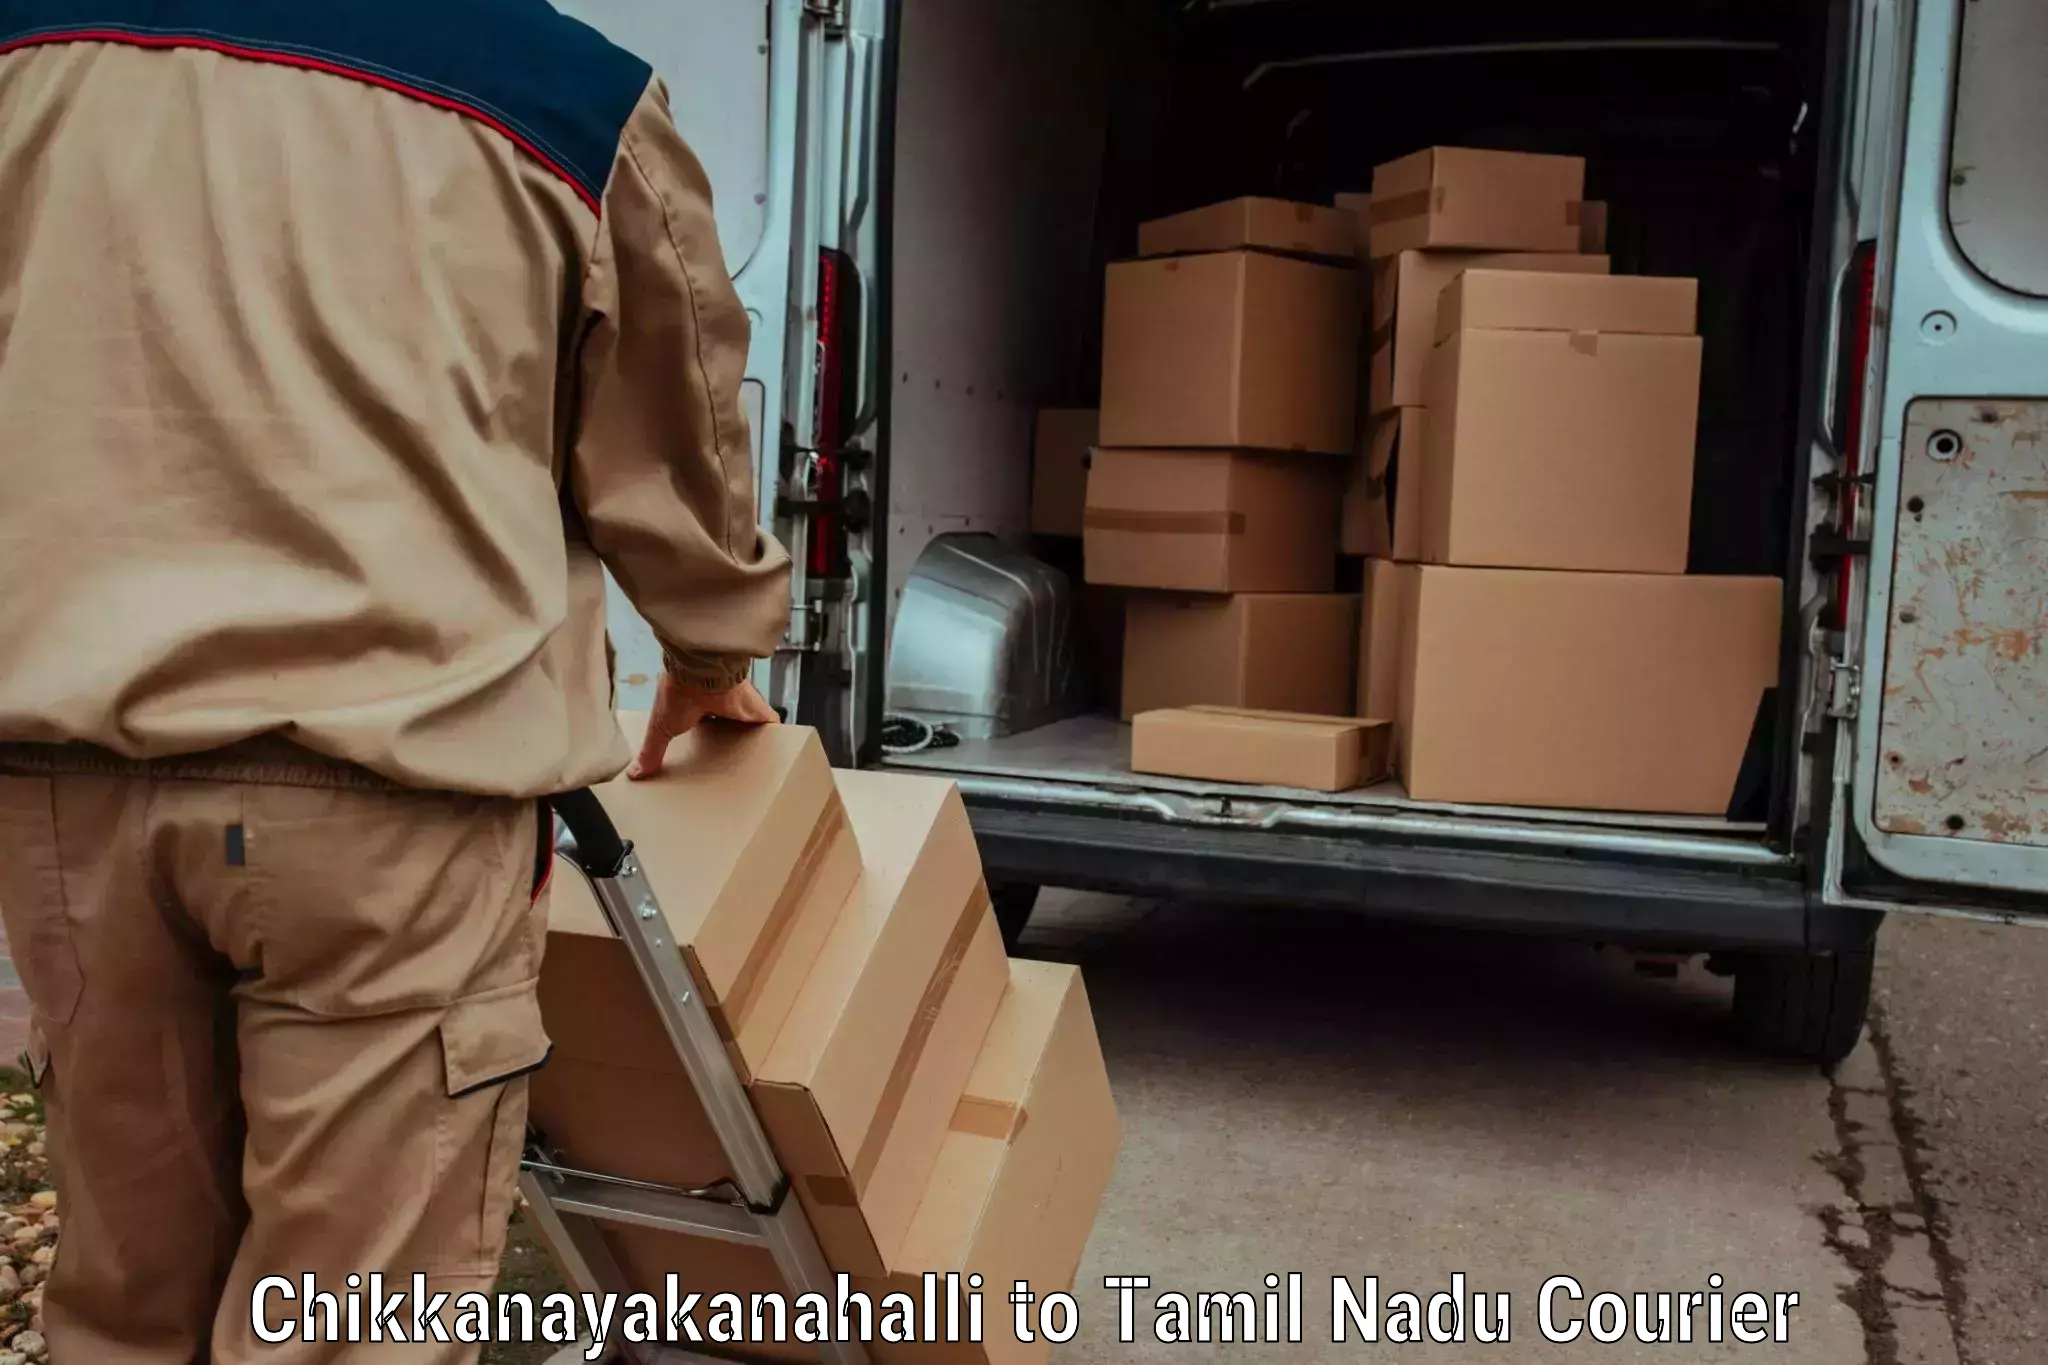 Cash on delivery service Chikkanayakanahalli to Peralam